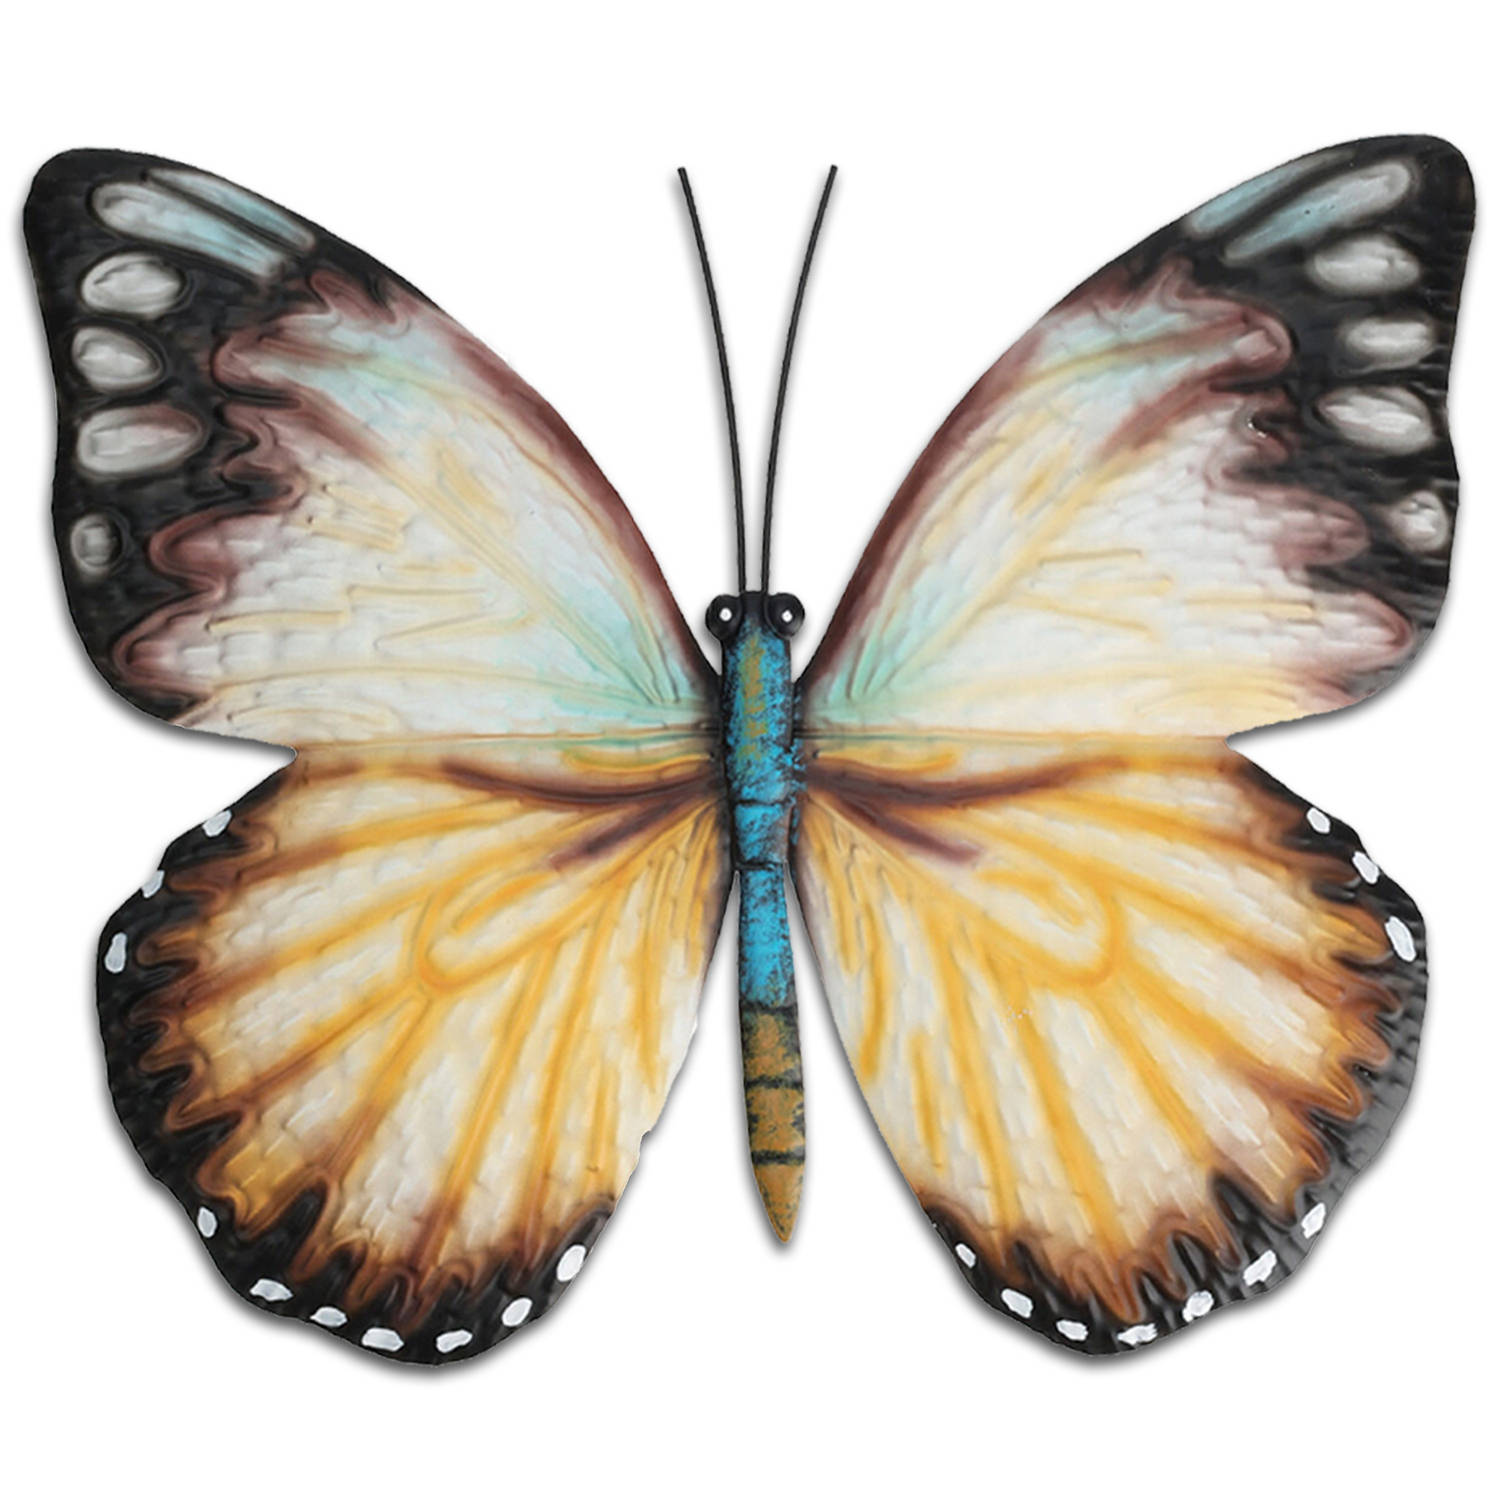 Tuin wanddecoratie vlinder metaal wit 31 x 23 cm Tuinbeelden